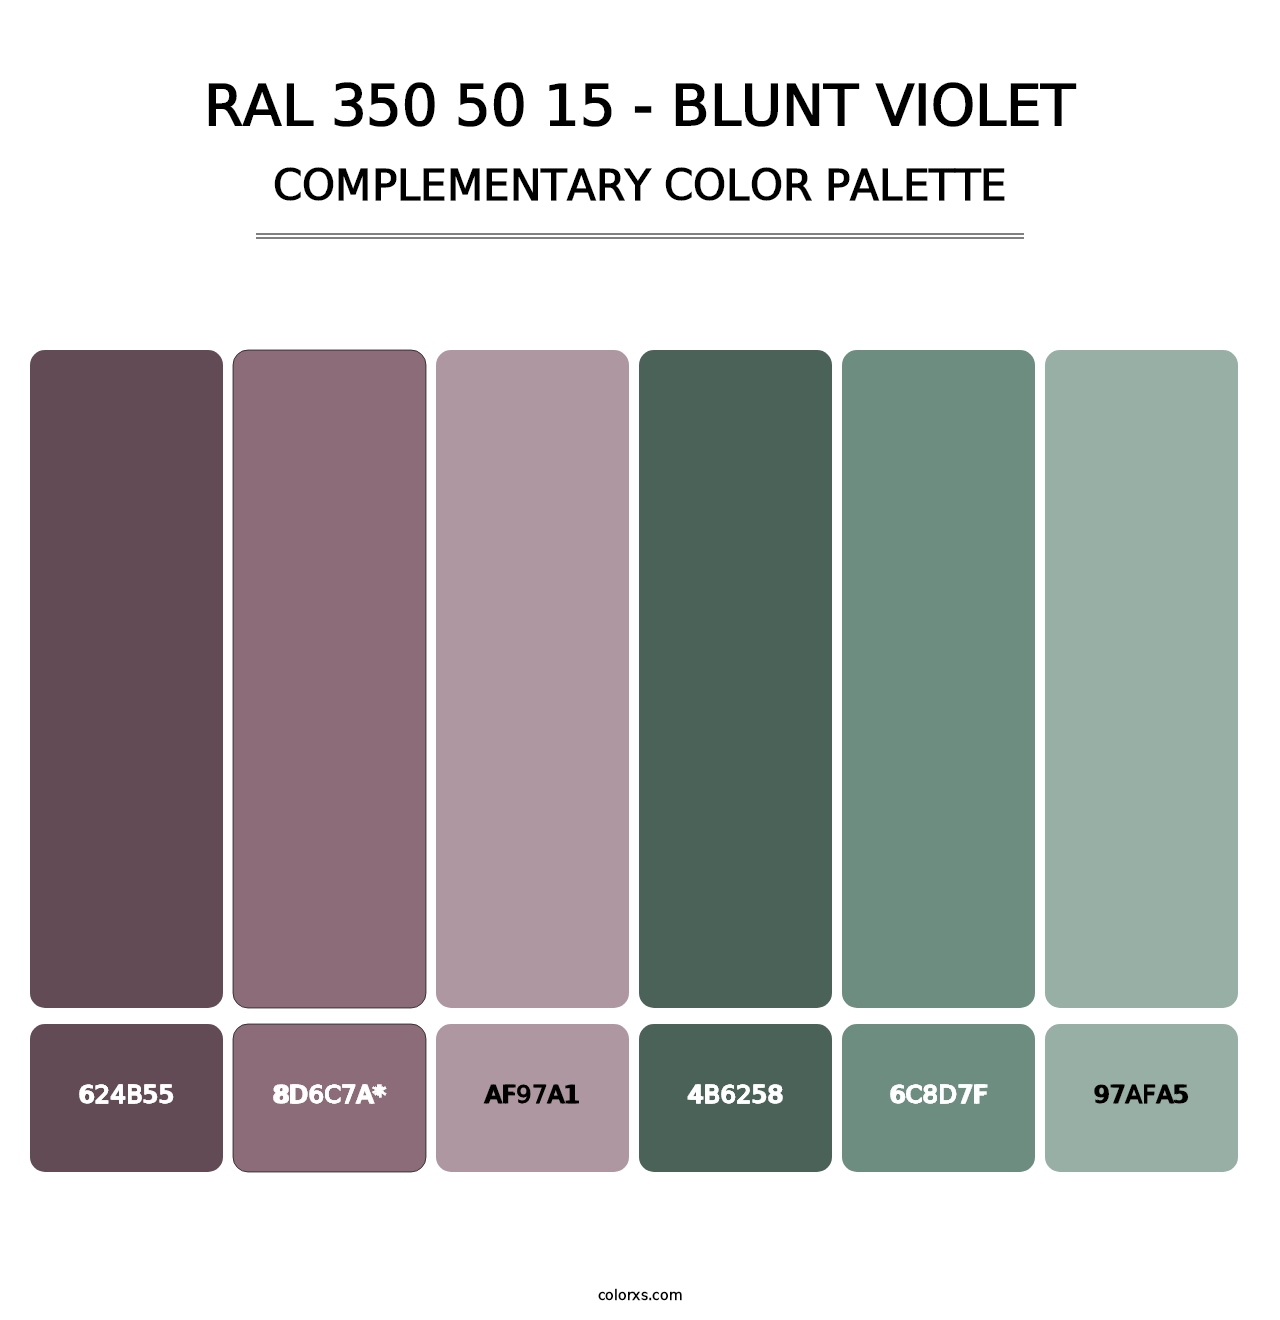 RAL 350 50 15 - Blunt Violet - Complementary Color Palette